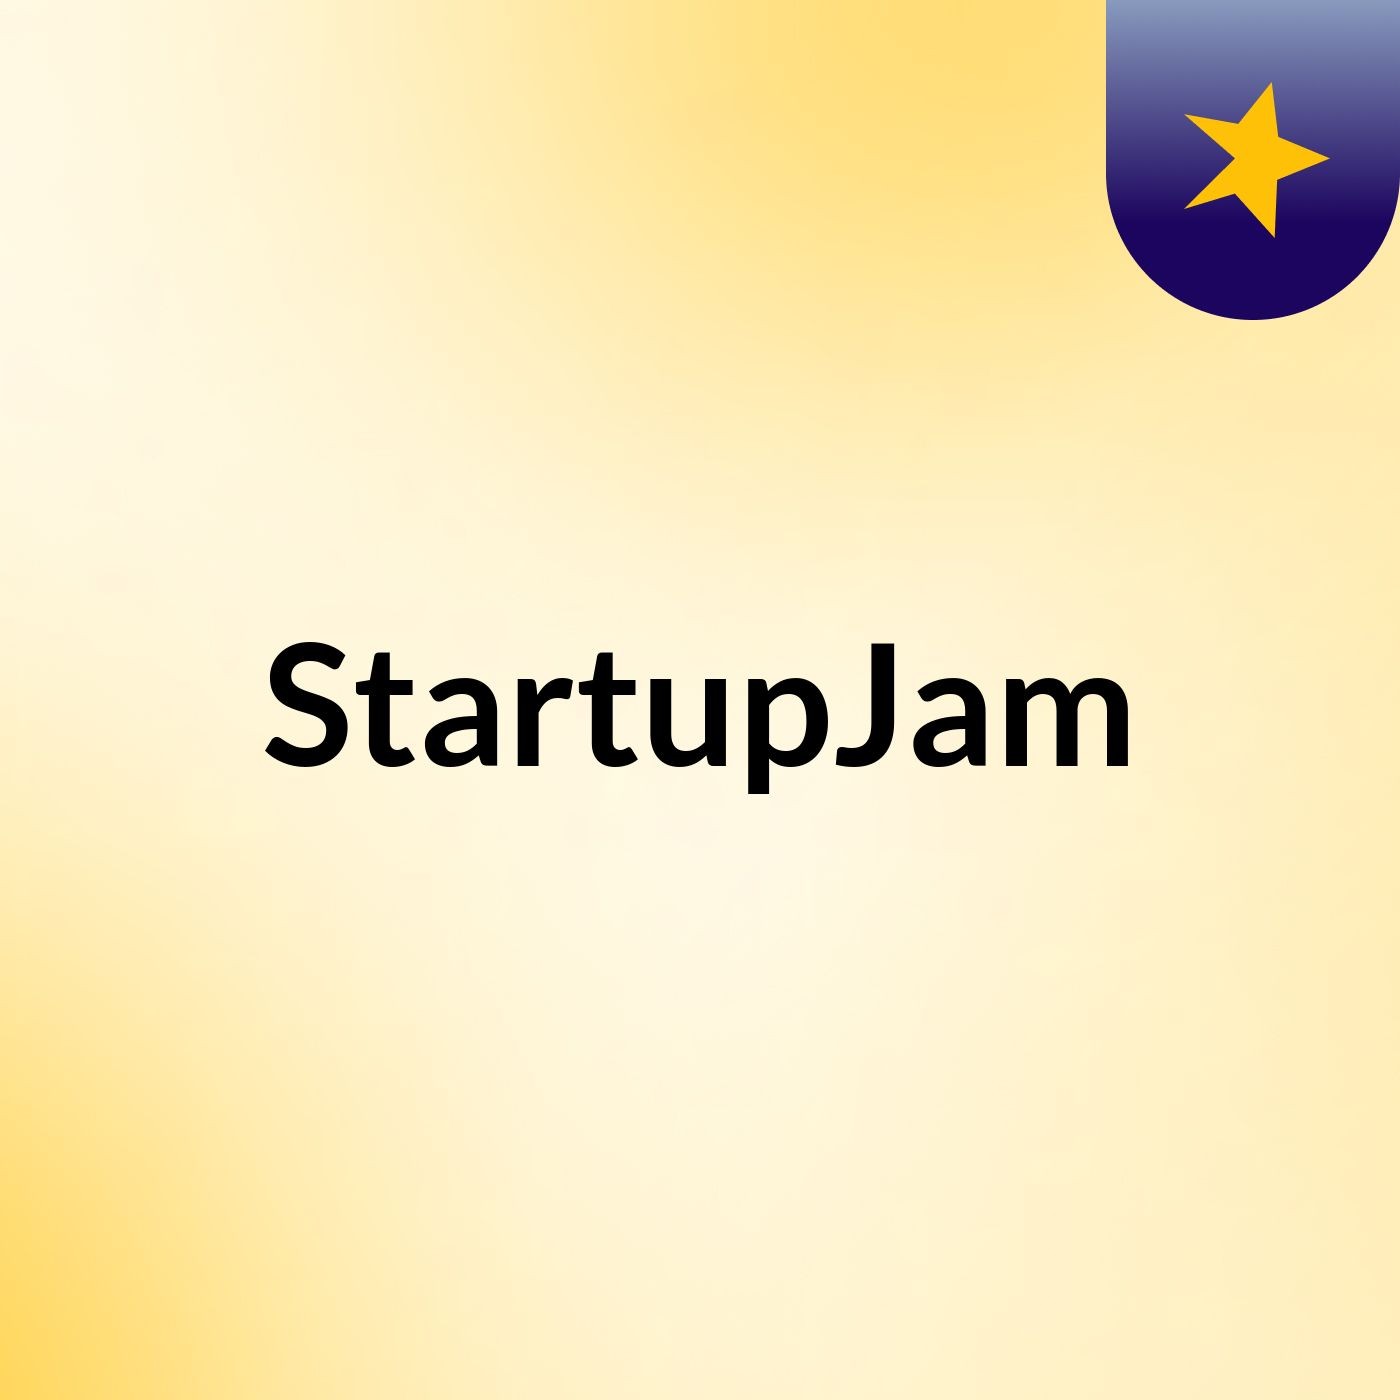 #StartupJam